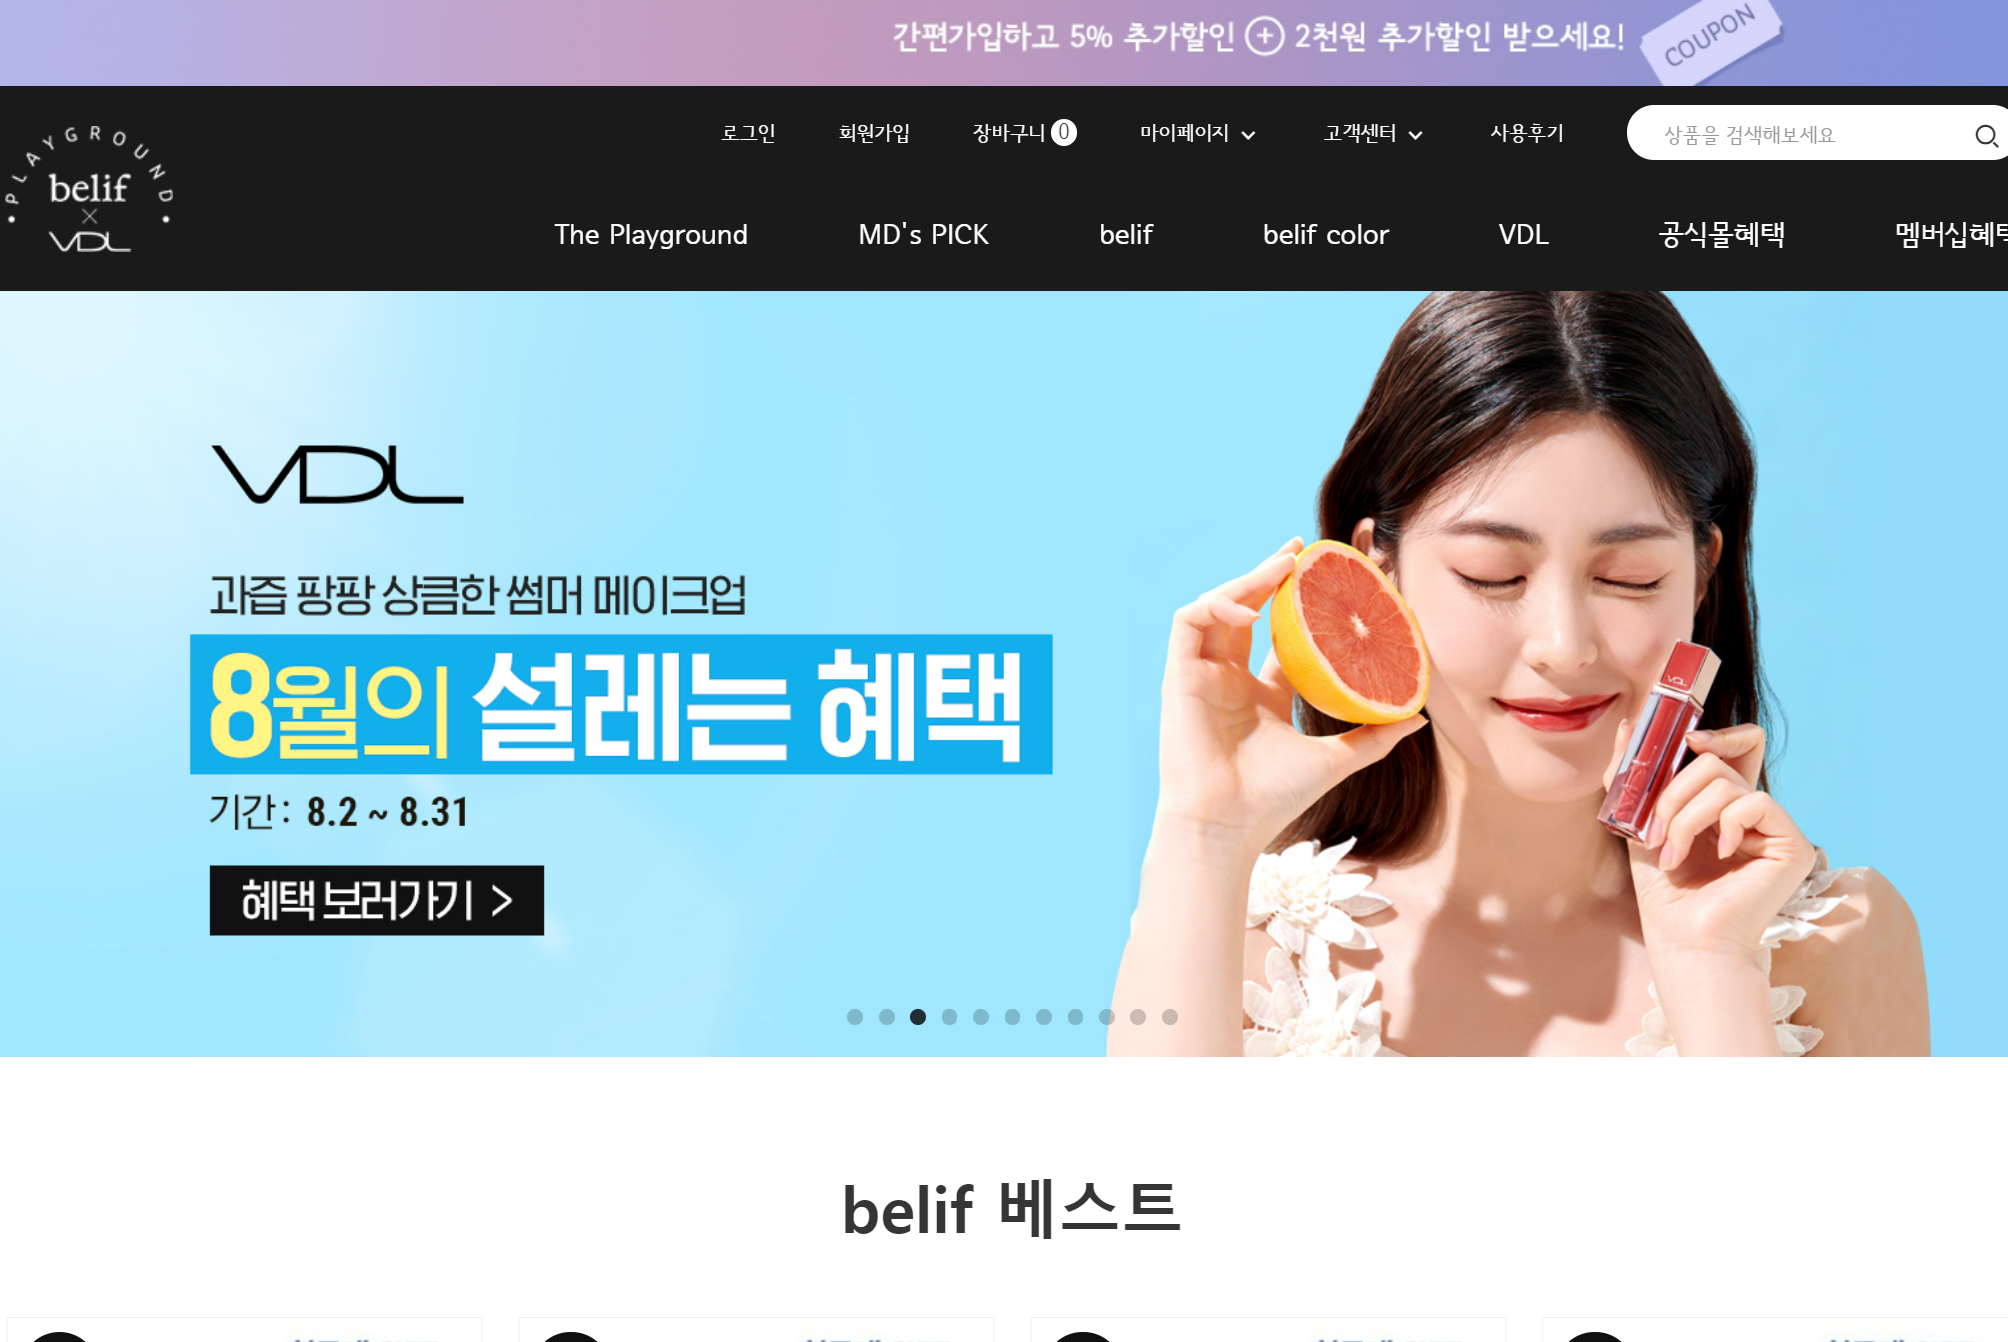 buy belif korea skincare makeup online